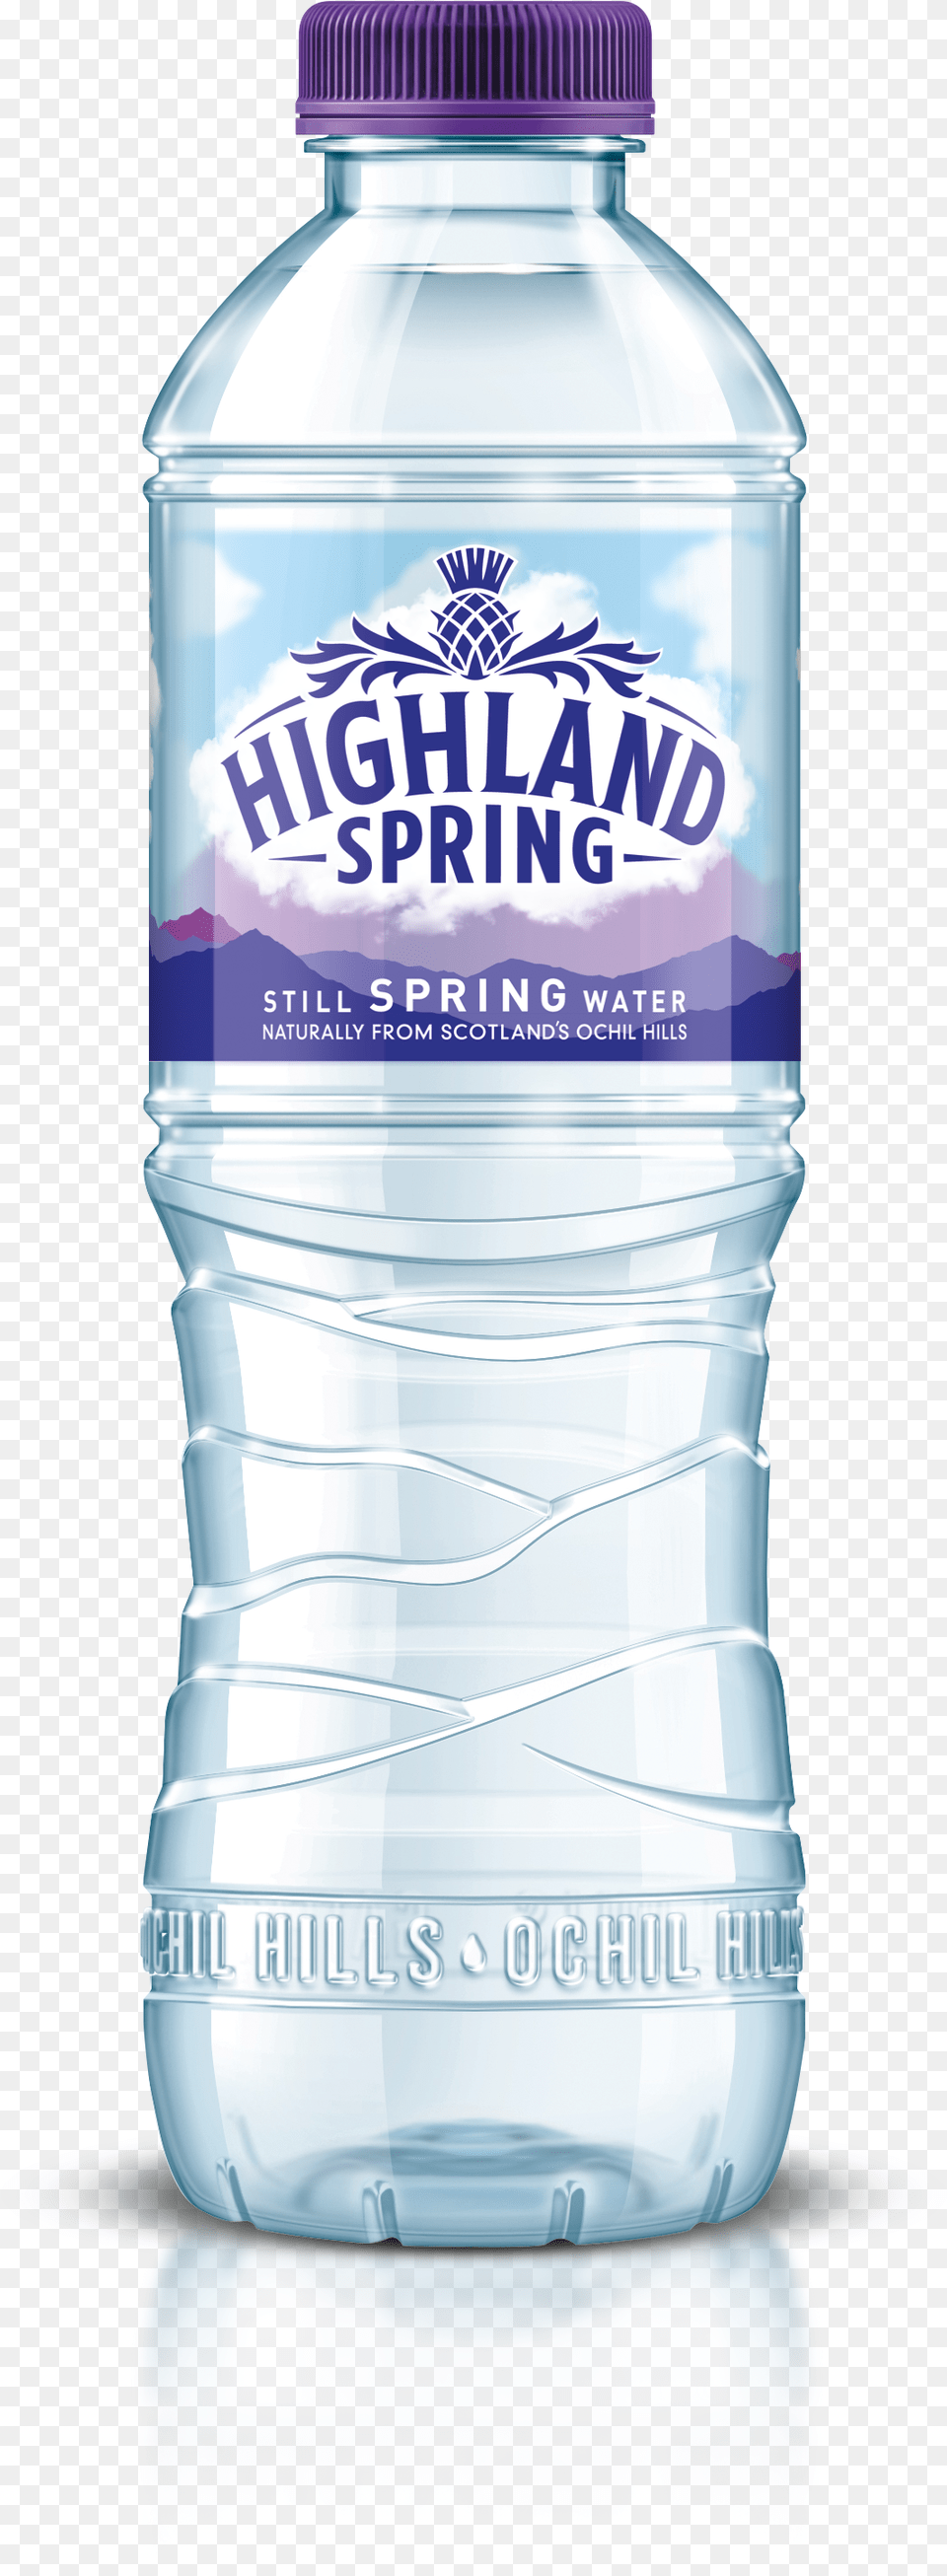 Highland Spring Water Bottle, Beverage, Mineral Water, Water Bottle, Shaker Png